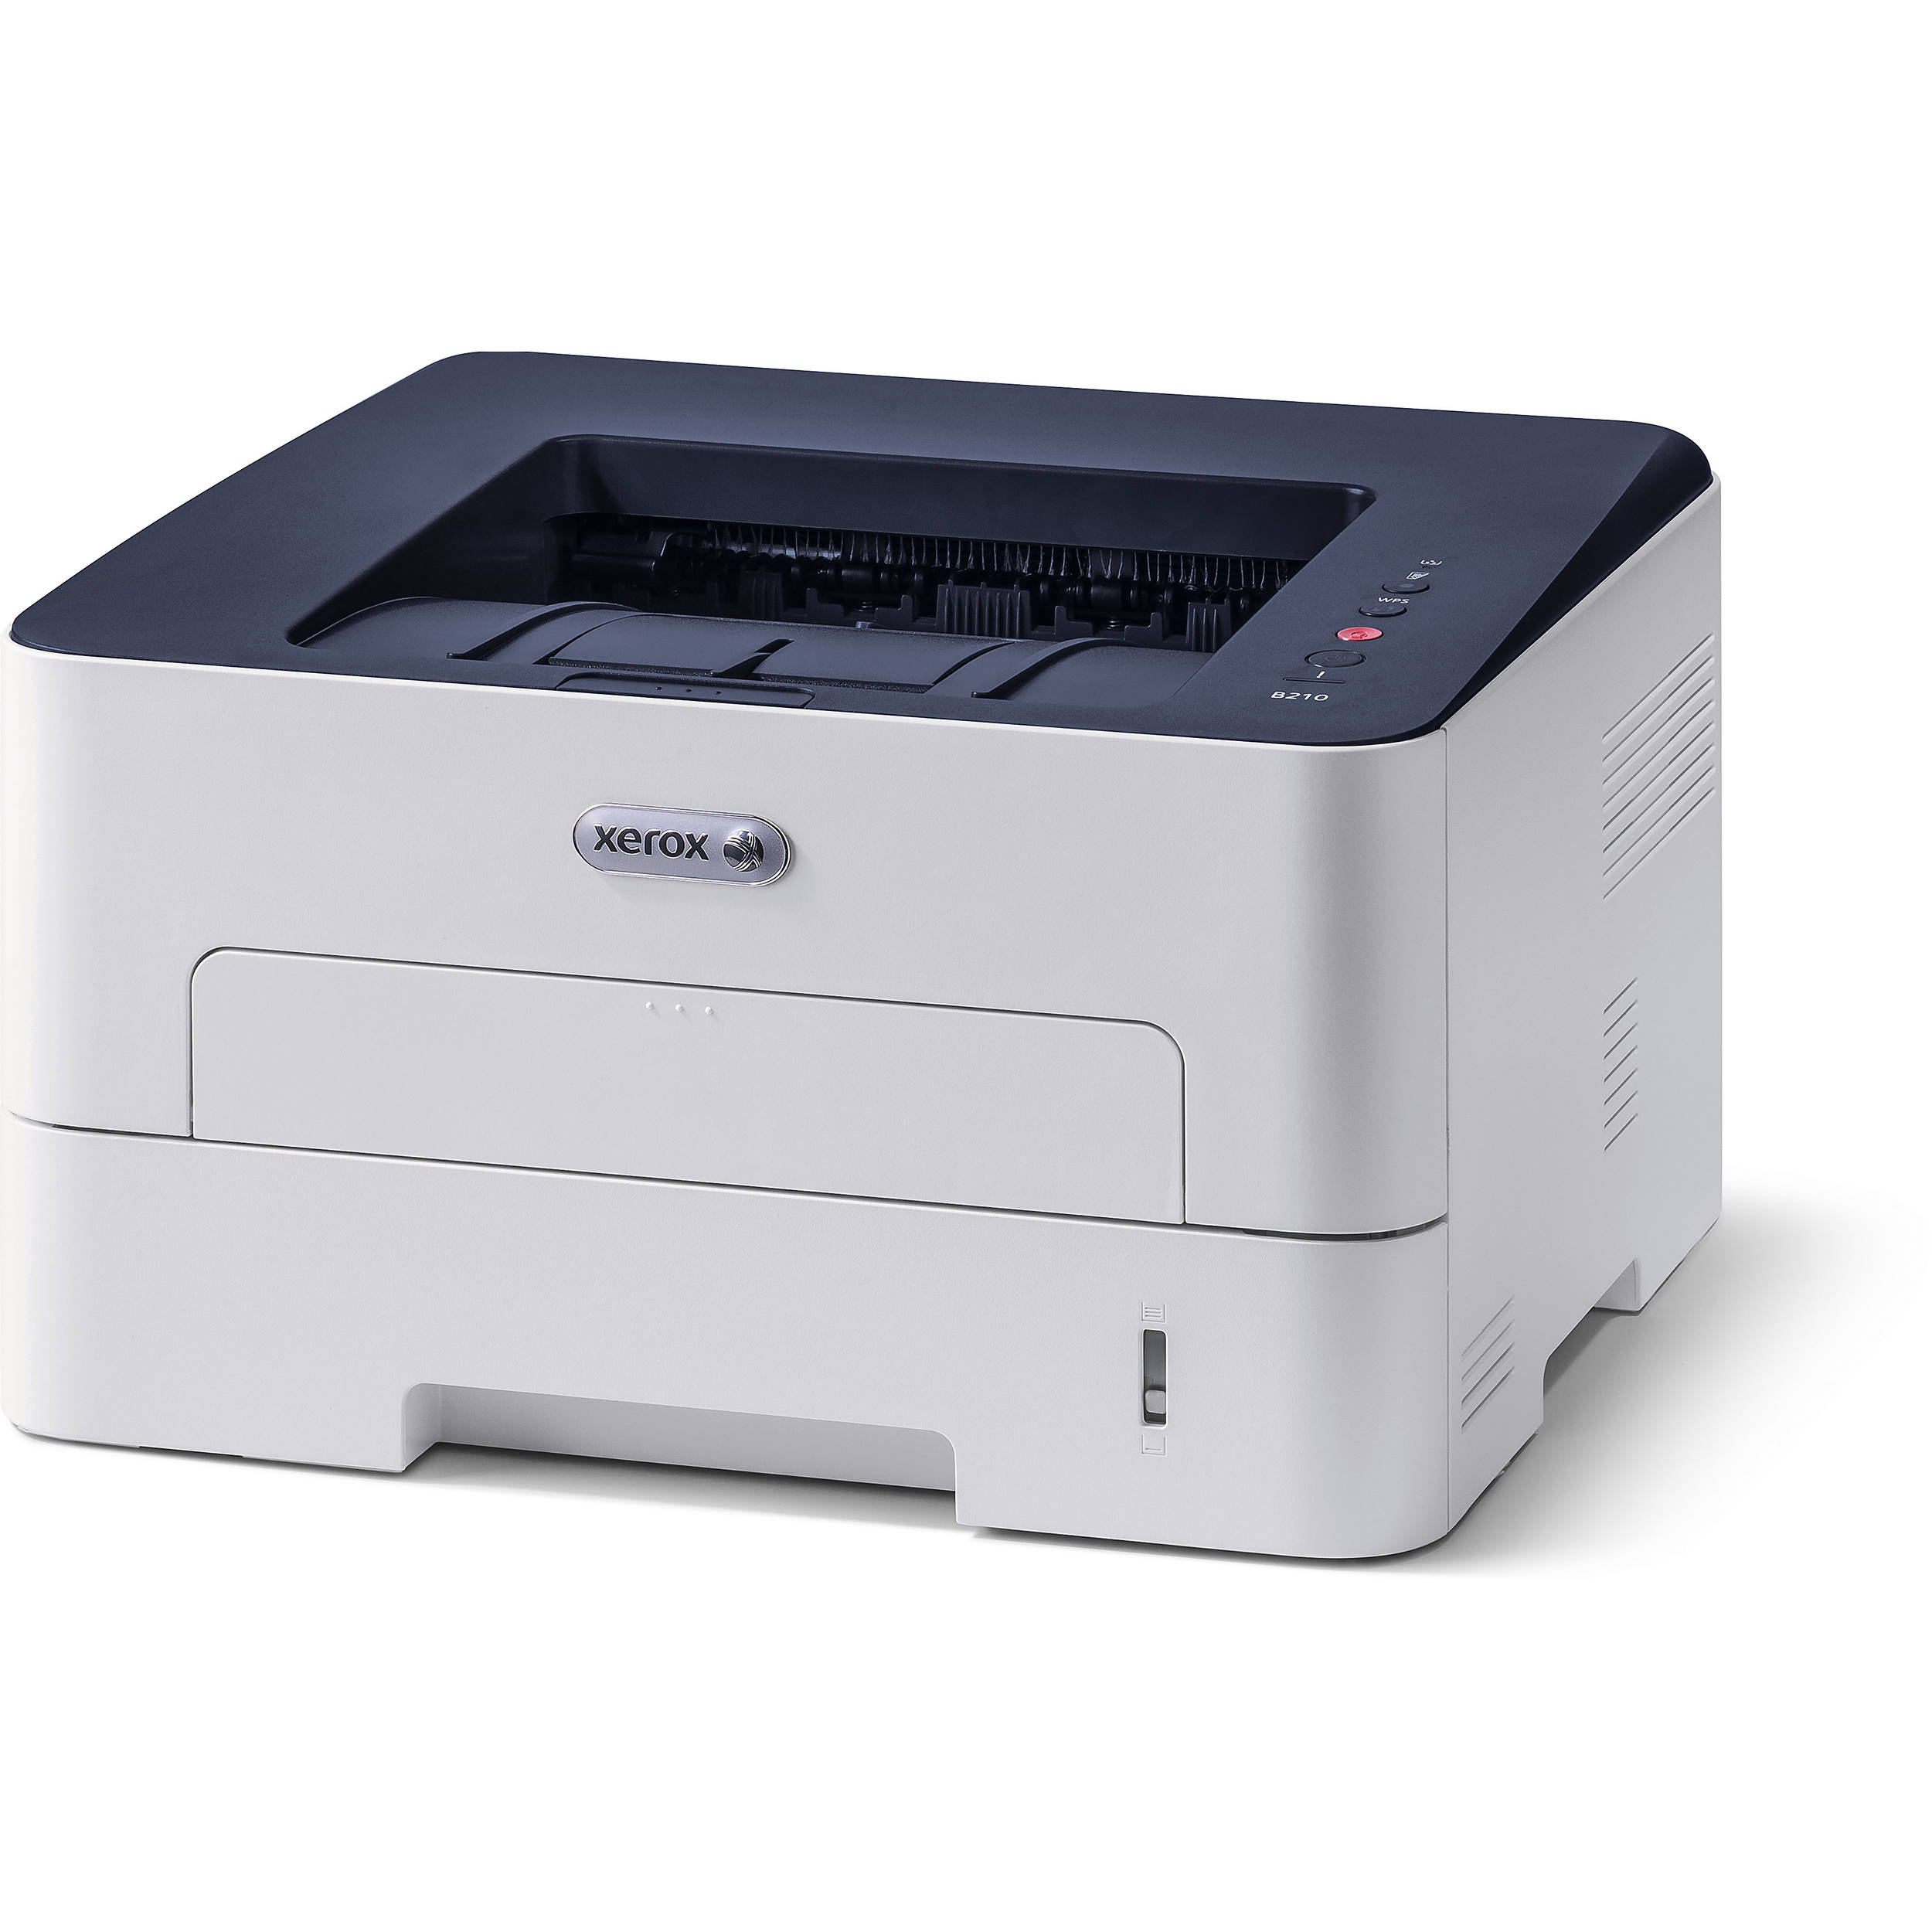 Лазерный принтер для фотографий. Принтер лазерный Xerox Phaser 3020bi. Принтер Xerox b210dni. Принтер Xerox Phaser 3052ni. Принтер Xerox b210 (b210dni).